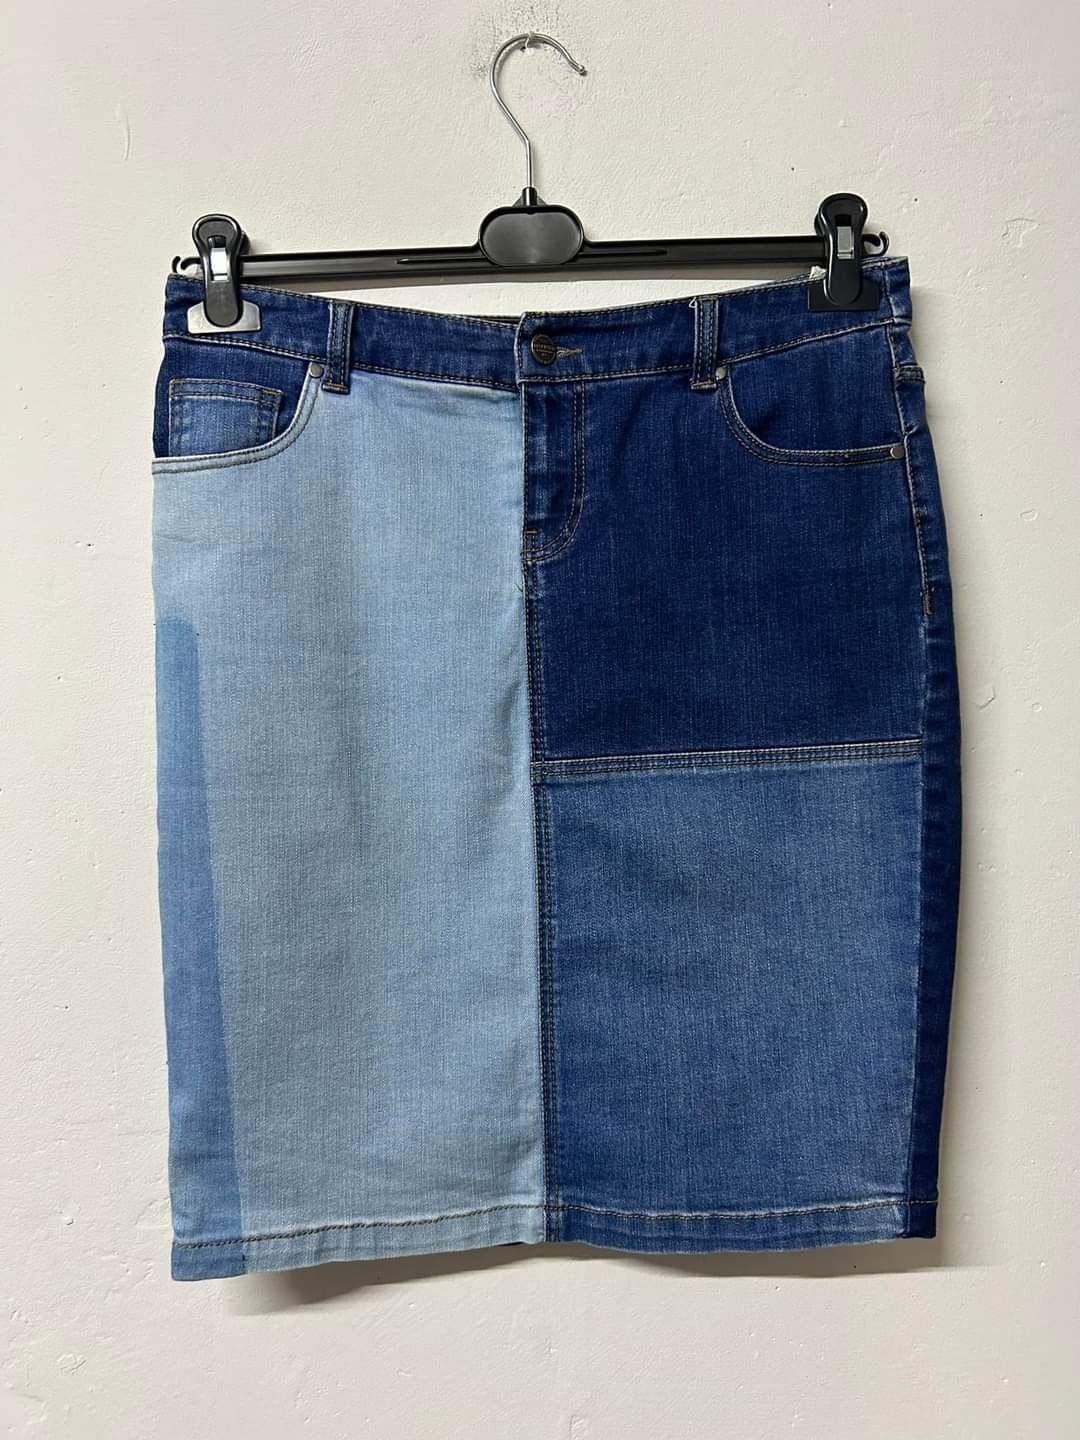 Spódniczka jeansowa do kolan jeans M 38 lato niebieska granatowa kiesz